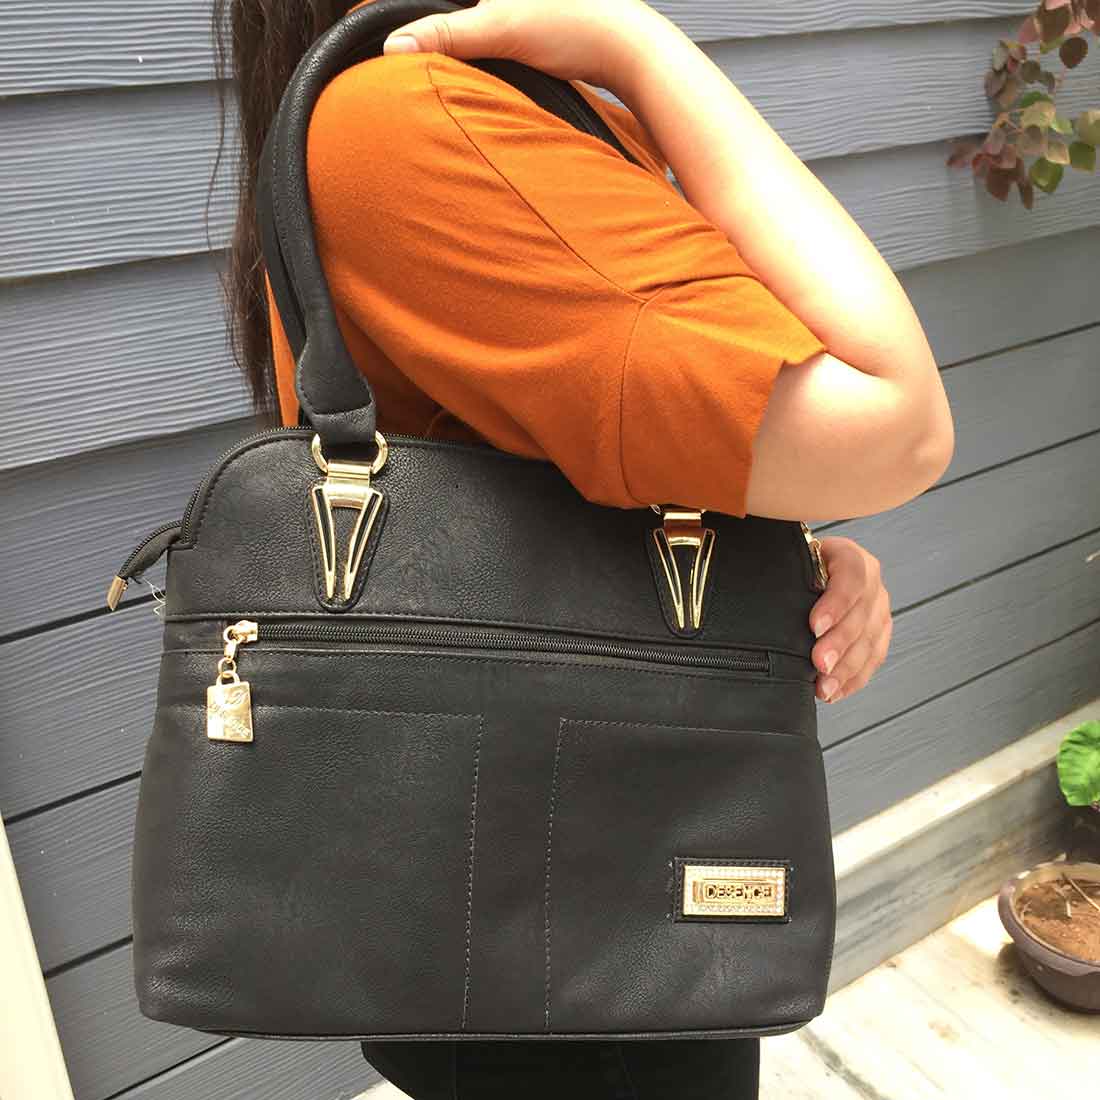 Black Handbags for Women  - Office Bags for Women - ApkaMart